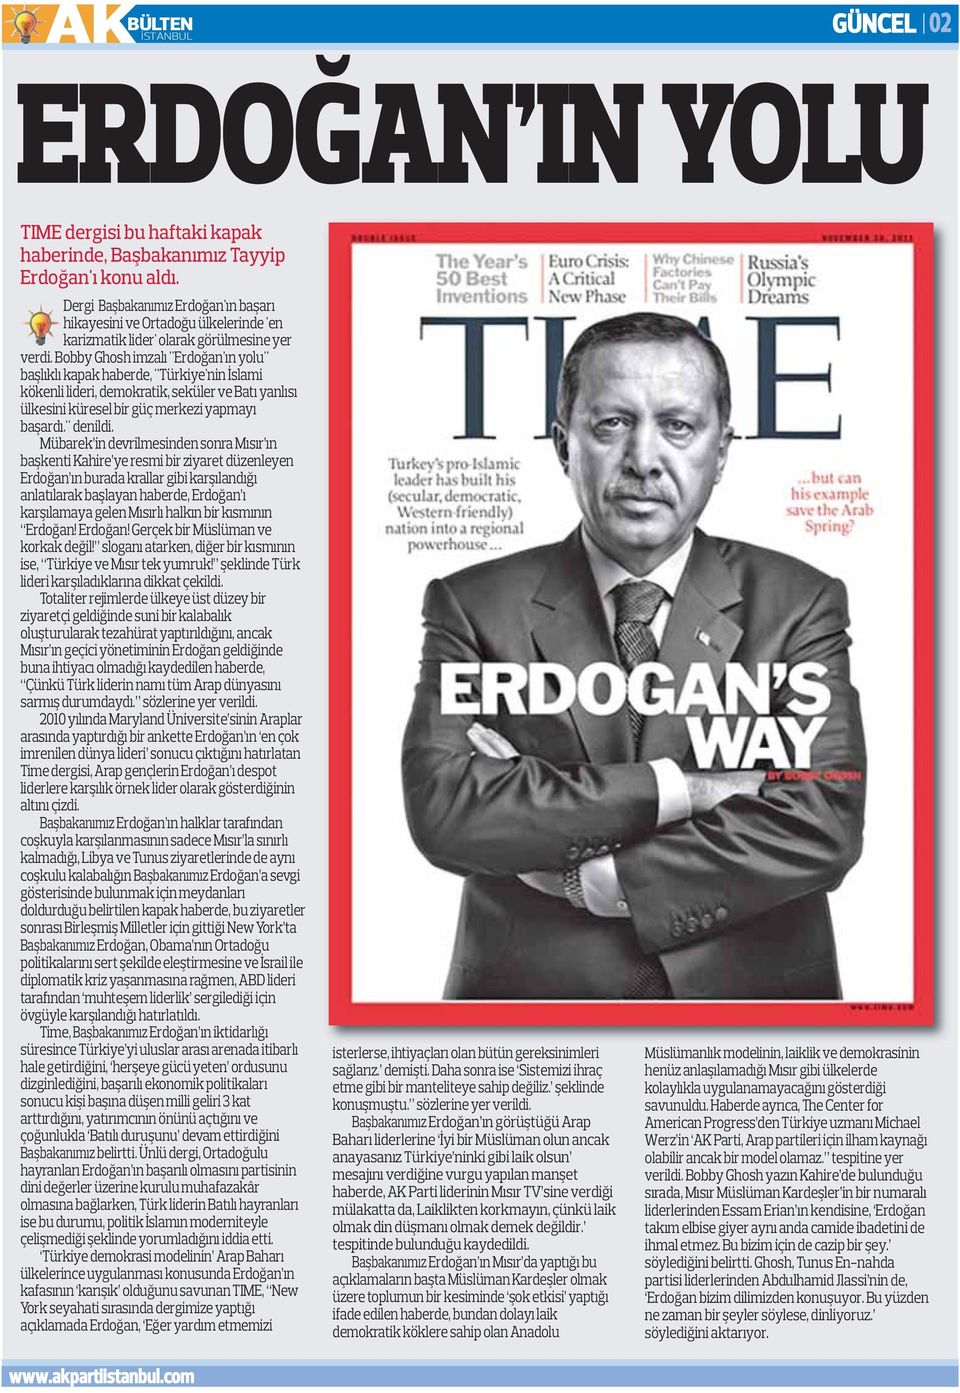 Bobby Ghosh imzalı "Erdoğan'ın yolu" başlıklı kapak haberde, "Türkiye'nin İslami kökenli lideri, demokratik, seküler ve Batı yanlısı ülkesini küresel bir güç merkezi yapmayı başardı." denildi.